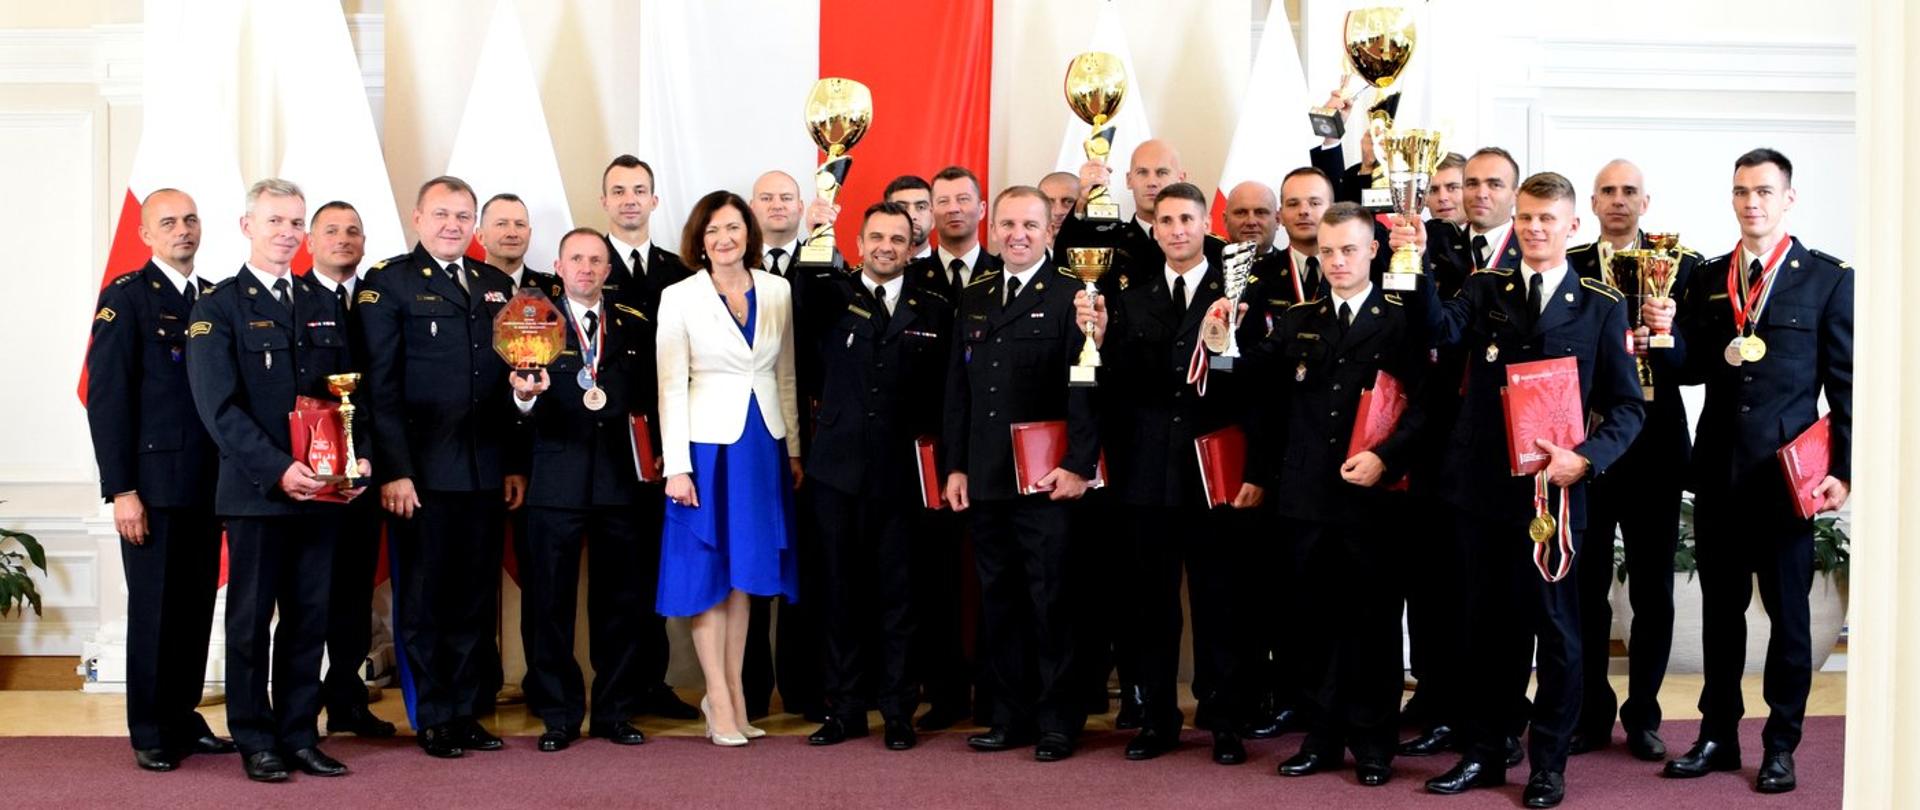 Zdjęcie zrobione wewnątrz pomieszczenia, w sali kolumnowej podkarpackiego Urzędu Wojewódzkiego, podczas uroczystości wręczenia nagród strażakom. Na tle biało-czerwonych flag stoją wyróżnieni strażacy wraz z wojewodą podkarpackim oraz generałem Państwowej Straży Pożarnej. Strażacy trzymają w rękach puchary, dyplomy i medale.